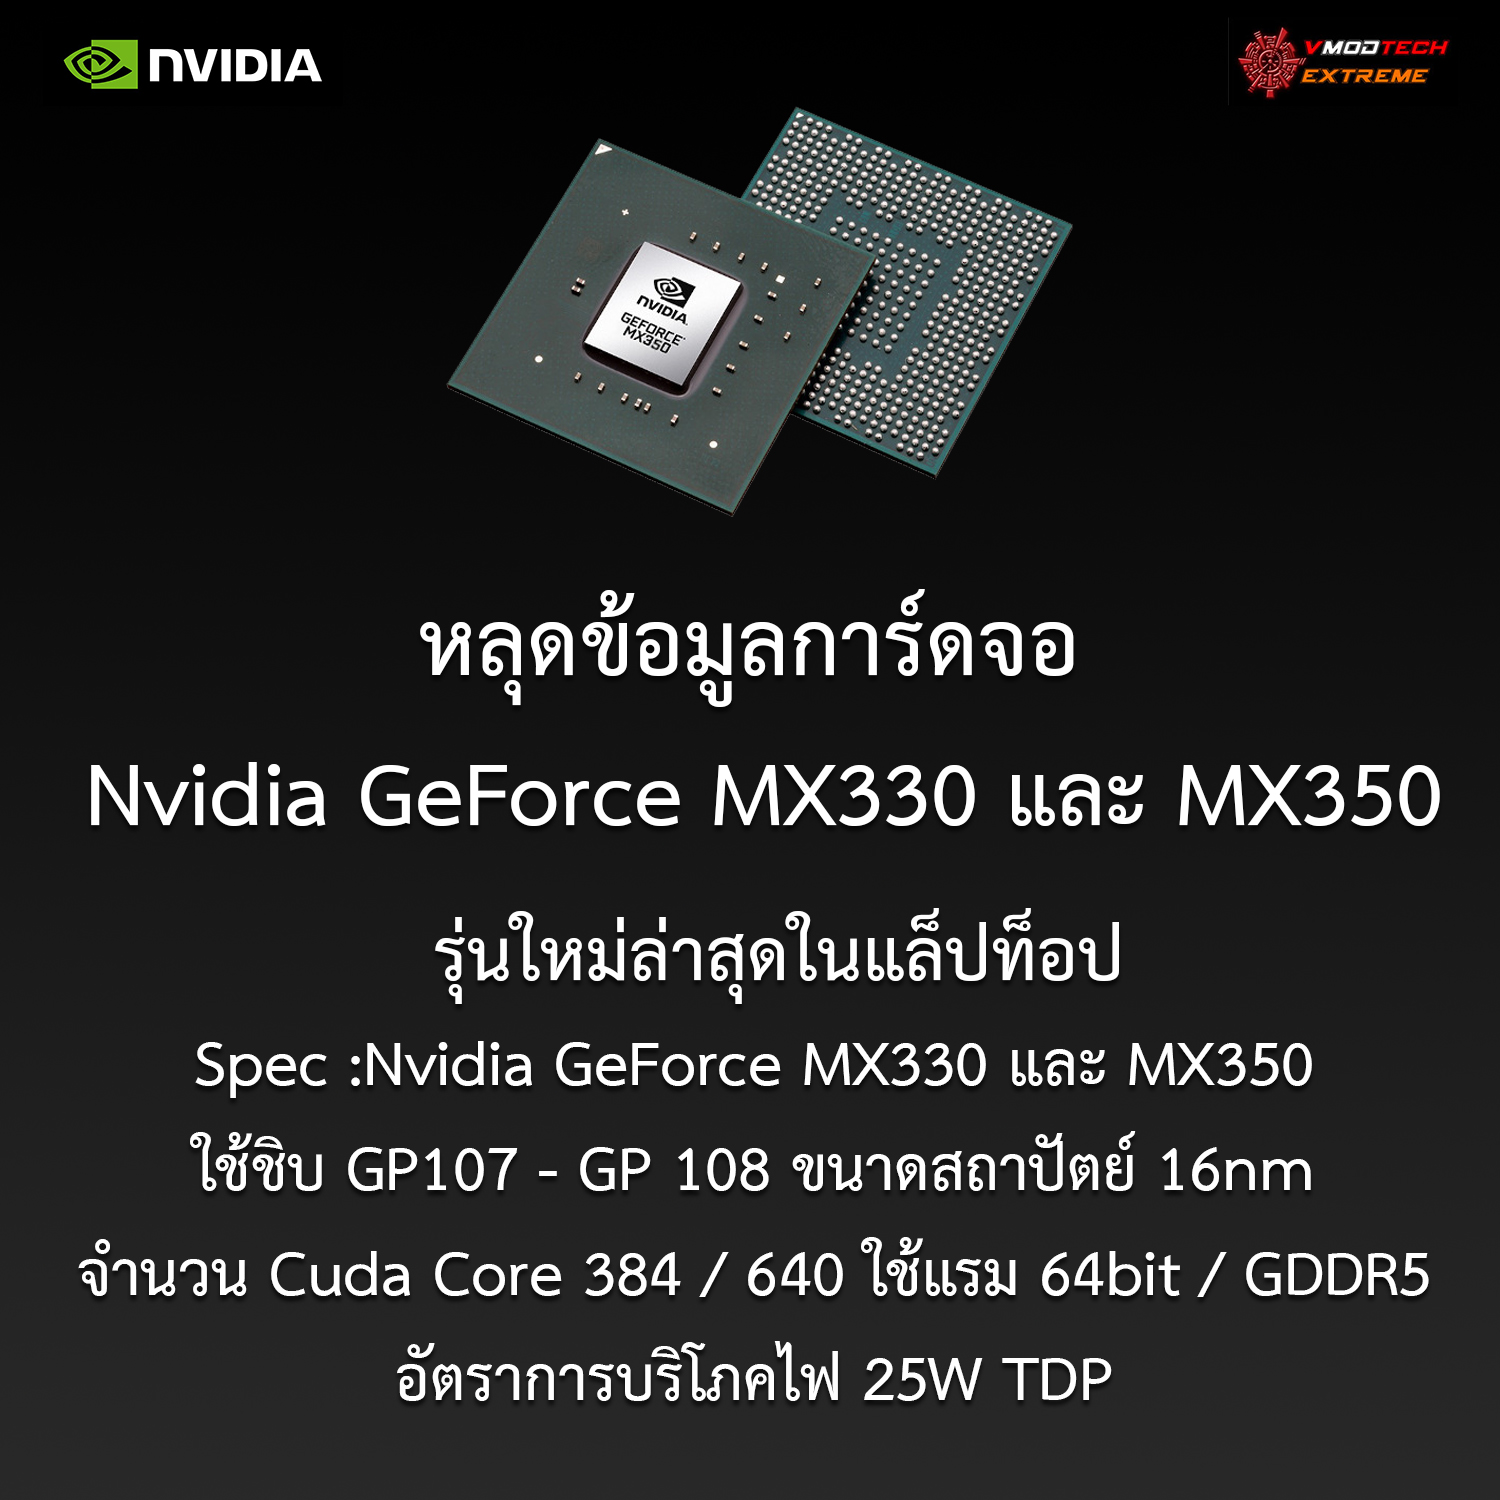 หลุดข้อมูลการ์ดจอ Nvidia GeForce MX330 และ MX350 รุ่นใหม่ล่าสุดในแล็ปท็อป